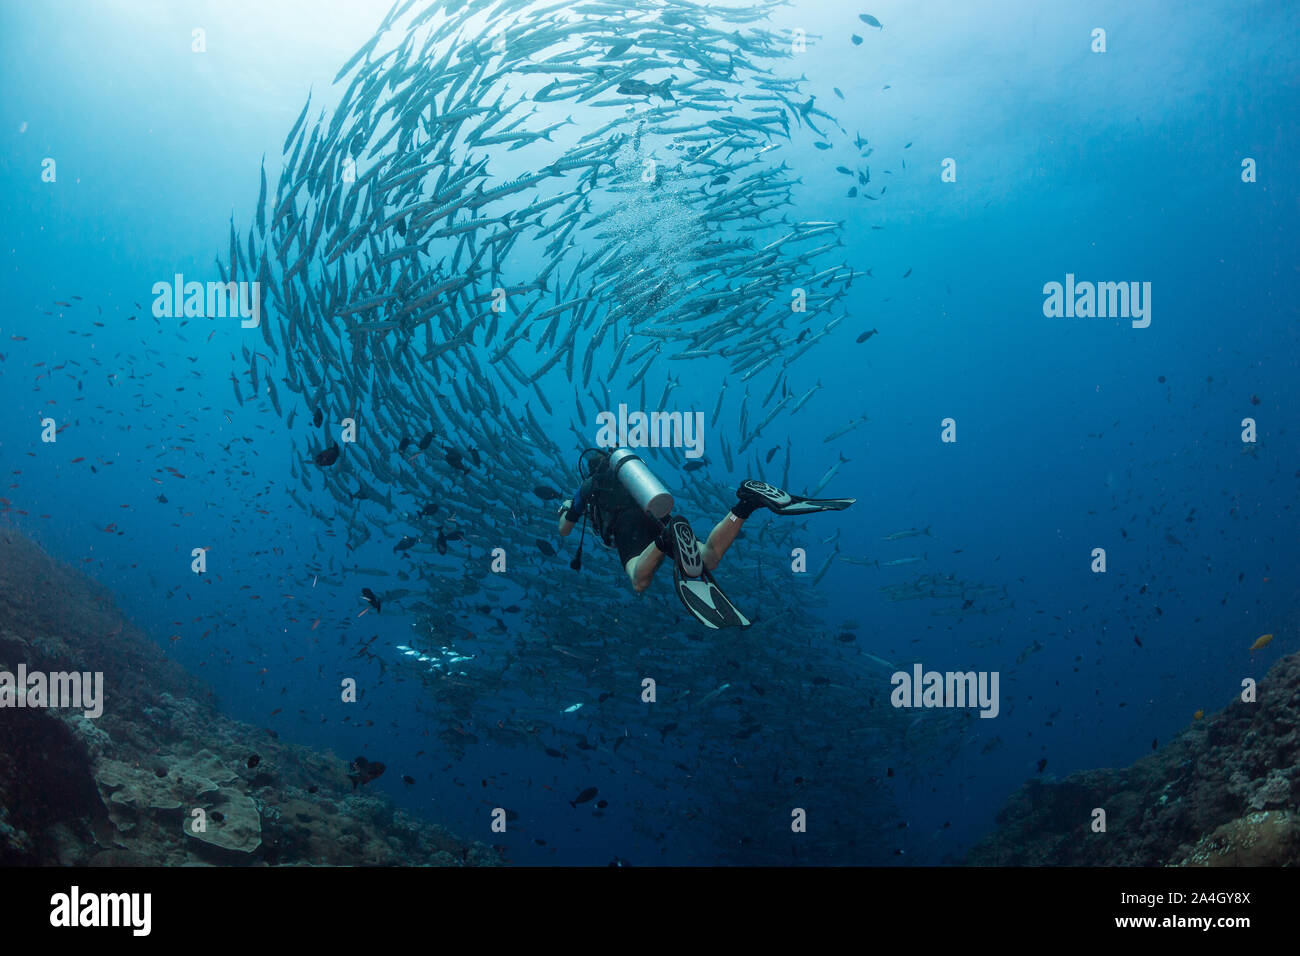 Ein Scuba Diver bewundert eine große Schule von blackfin Barracuda beim Tauchen ein seamount in der Nähe von Kimbe Bay, Papua Neu Guinea. Stockfoto